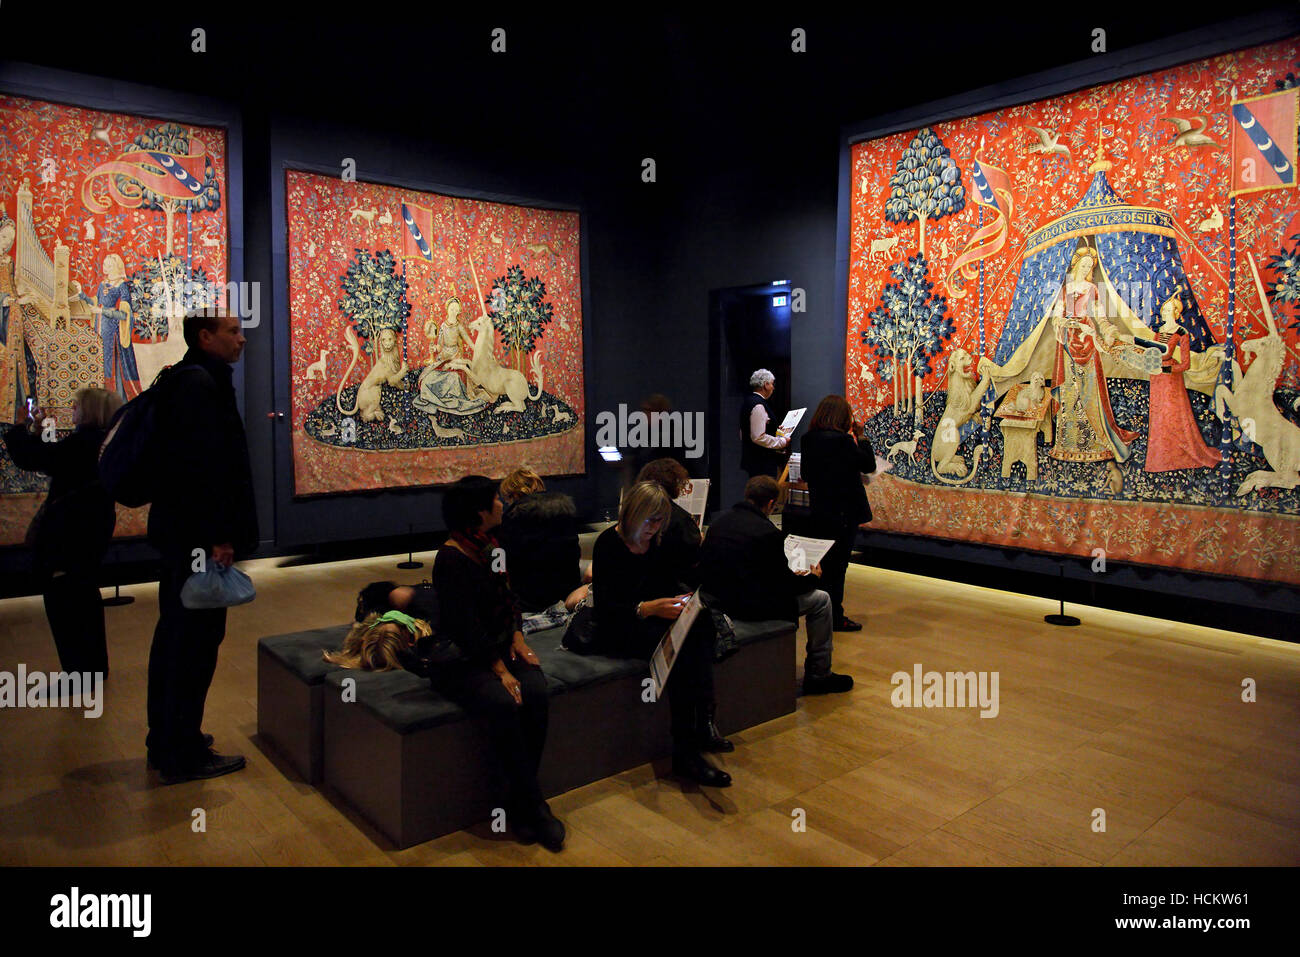 "La dame et la licorne" une série de six tapisseries médiévales dans le musée (Musée national du Moyen Âge), Paris, France Banque D'Images